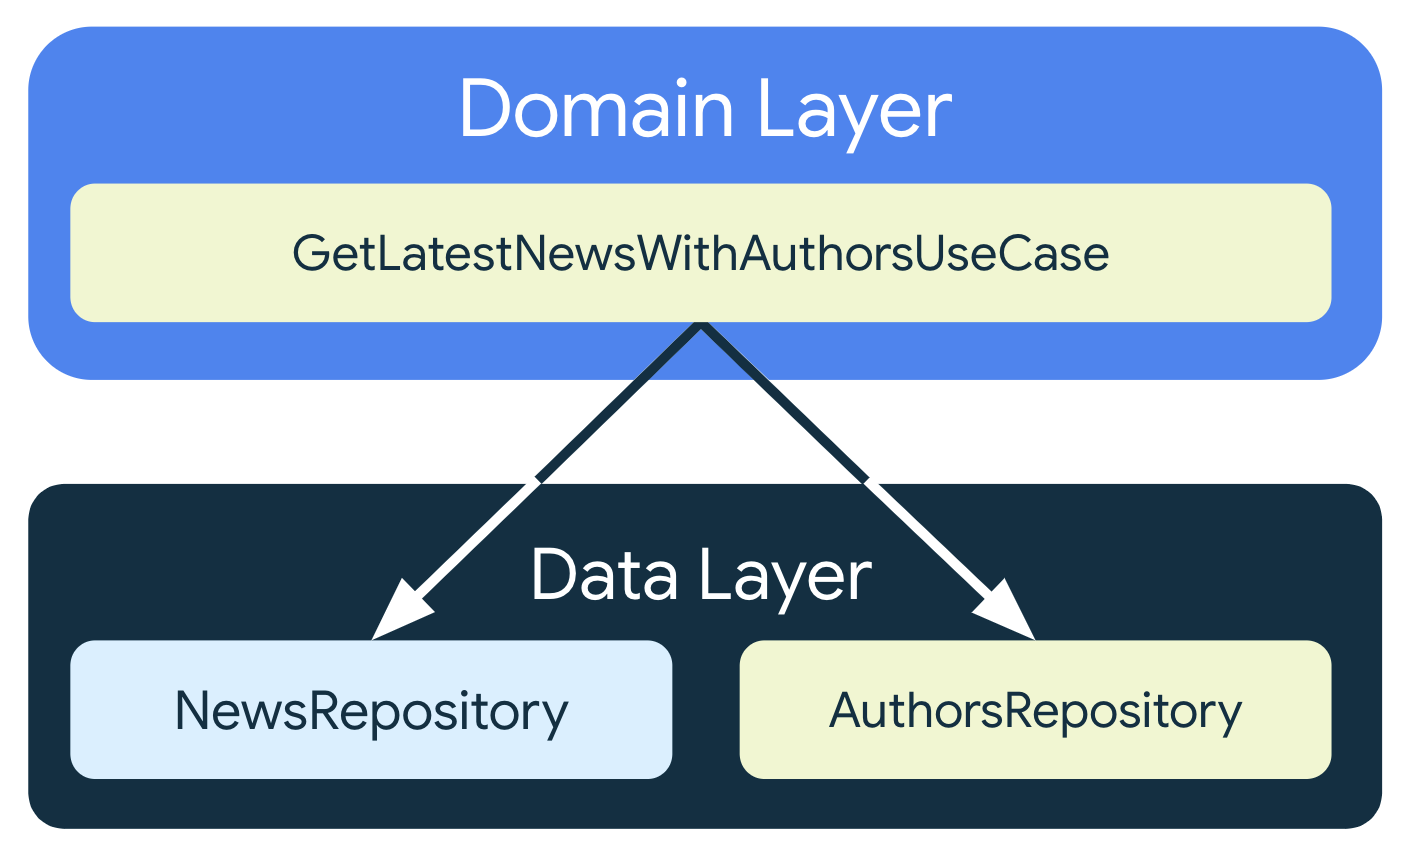 GetLastNewsWithAuthorsUseCase, veri katmanındaki iki farklı depo sınıfına bağlıdır: NewsRepository ve AuthorsRepository.